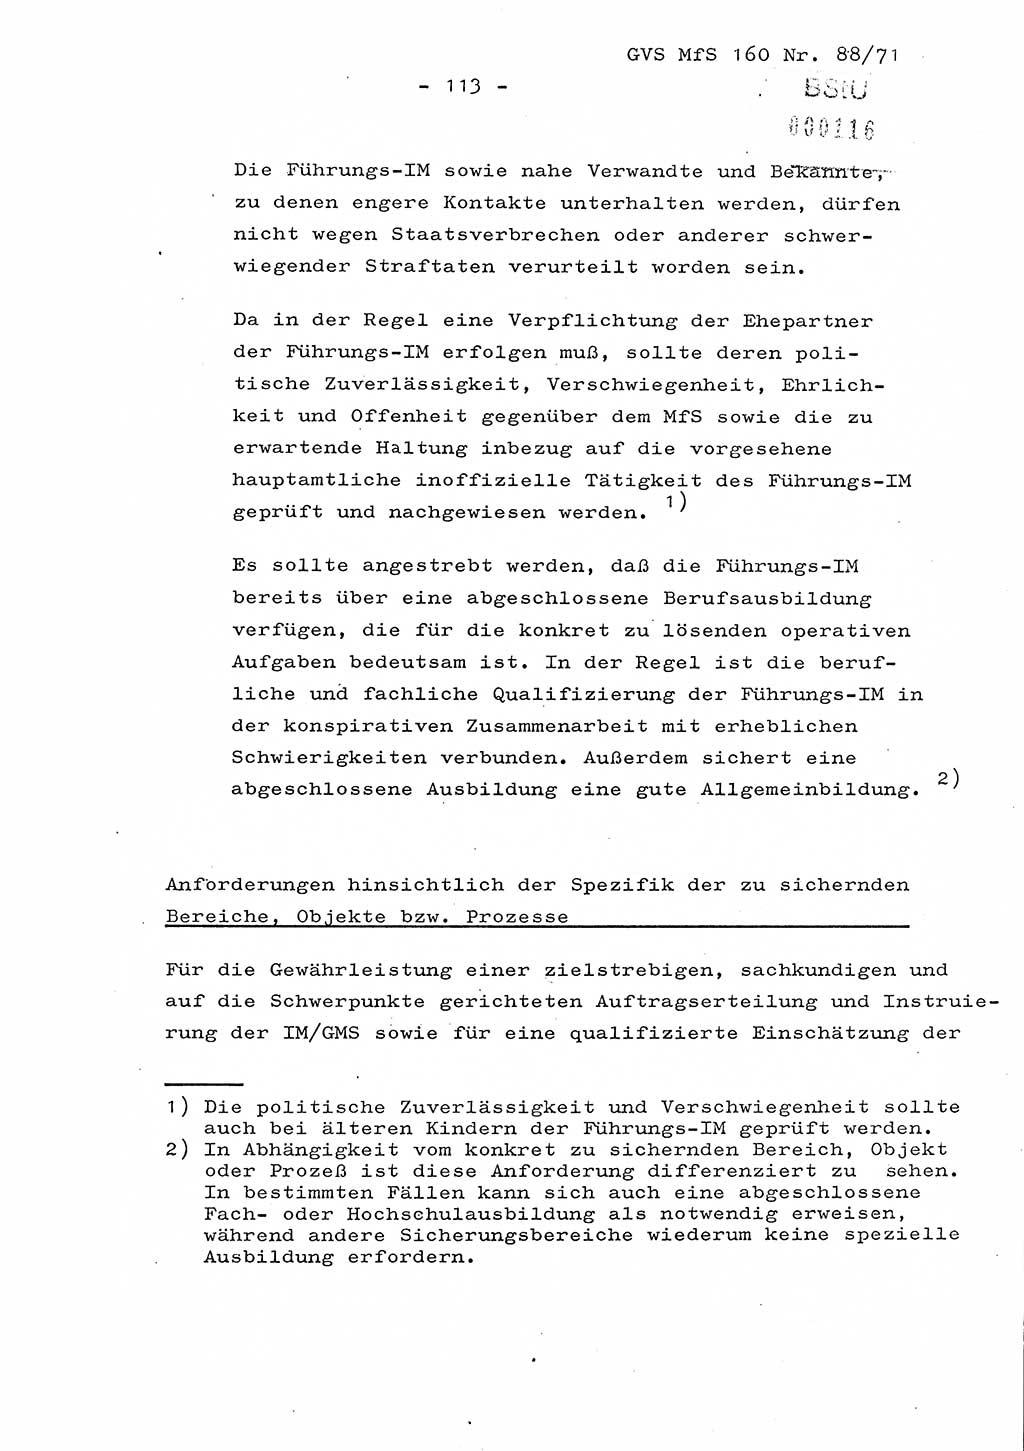 Dissertation Oberstleutnant Josef Schwarz (BV Schwerin), Major Fritz Amm (JHS), Hauptmann Peter Gräßler (JHS), Ministerium für Staatssicherheit (MfS) [Deutsche Demokratische Republik (DDR)], Juristische Hochschule (JHS), Geheime Verschlußsache (GVS) 160-88/71, Potsdam 1972, Seite 113 (Diss. MfS DDR JHS GVS 160-88/71 1972, S. 113)